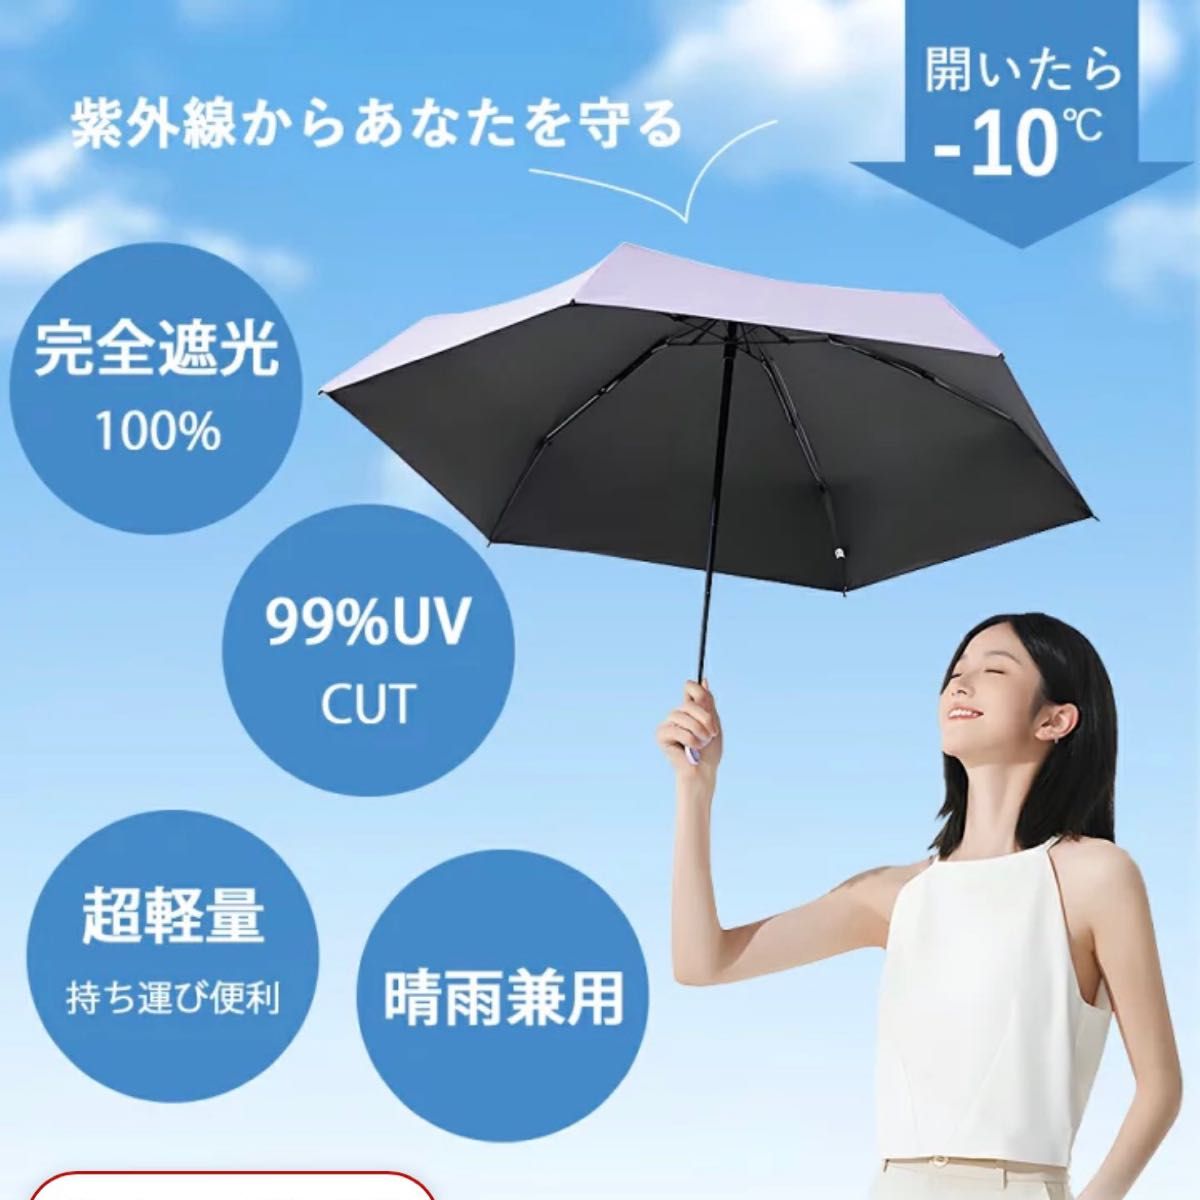 折りたたみ傘 晴雨兼用 日傘 傘 遮光 折り畳み傘 軽量 雨傘 コンパクト ミニ 小さい 軽い 日焼け対策 紫外線対策 UVカット